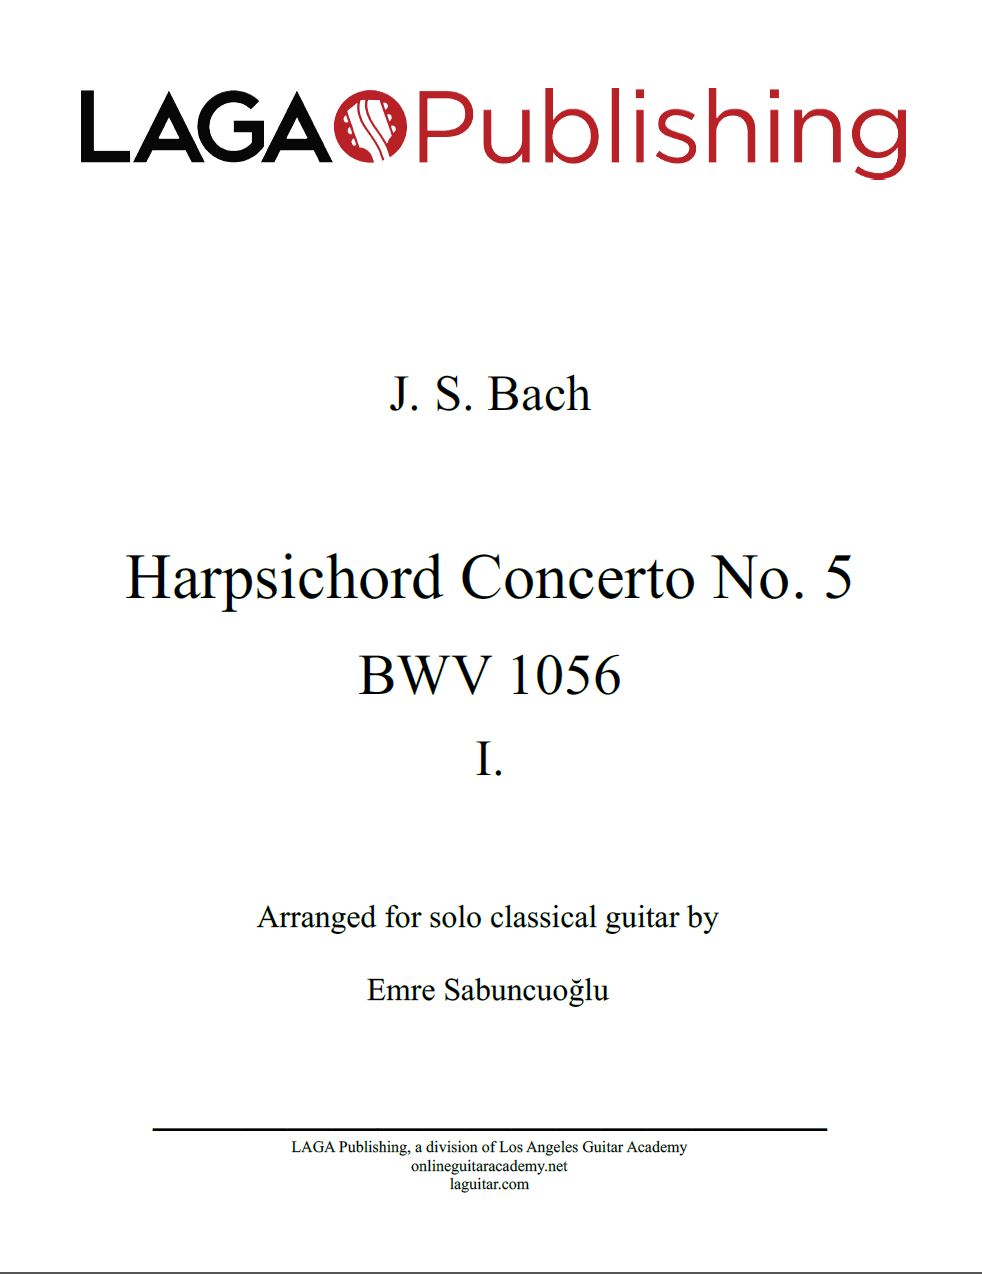 Harpsichord-Concerto-No-5